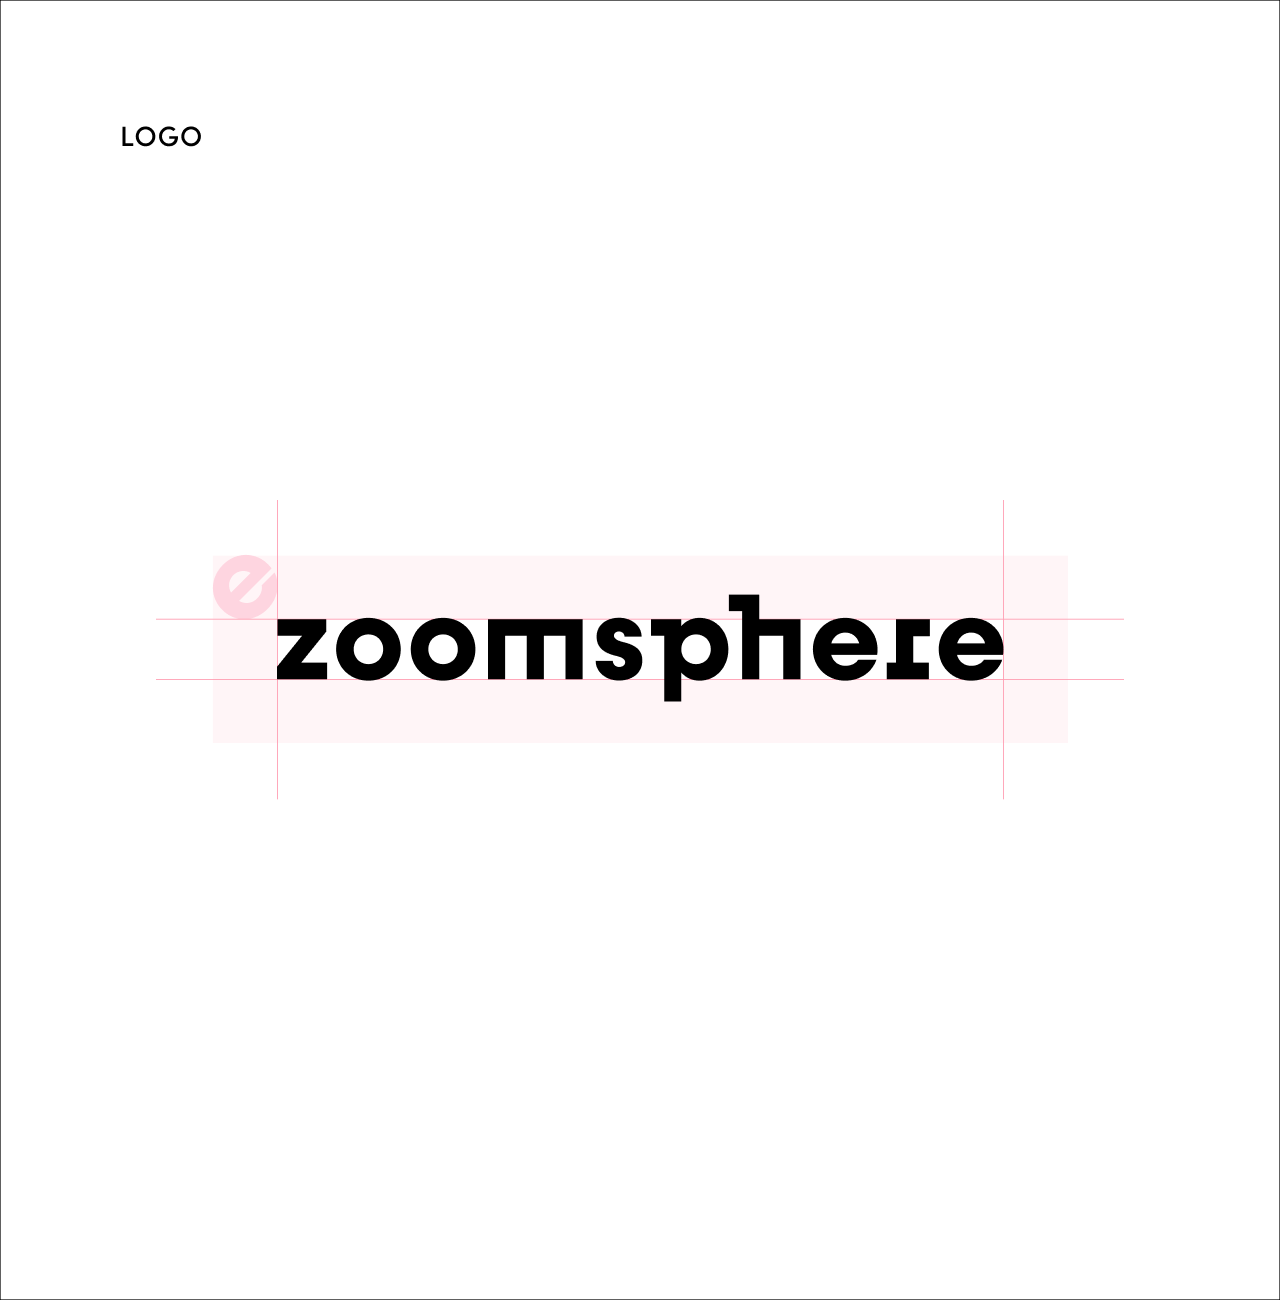 zoomsphere